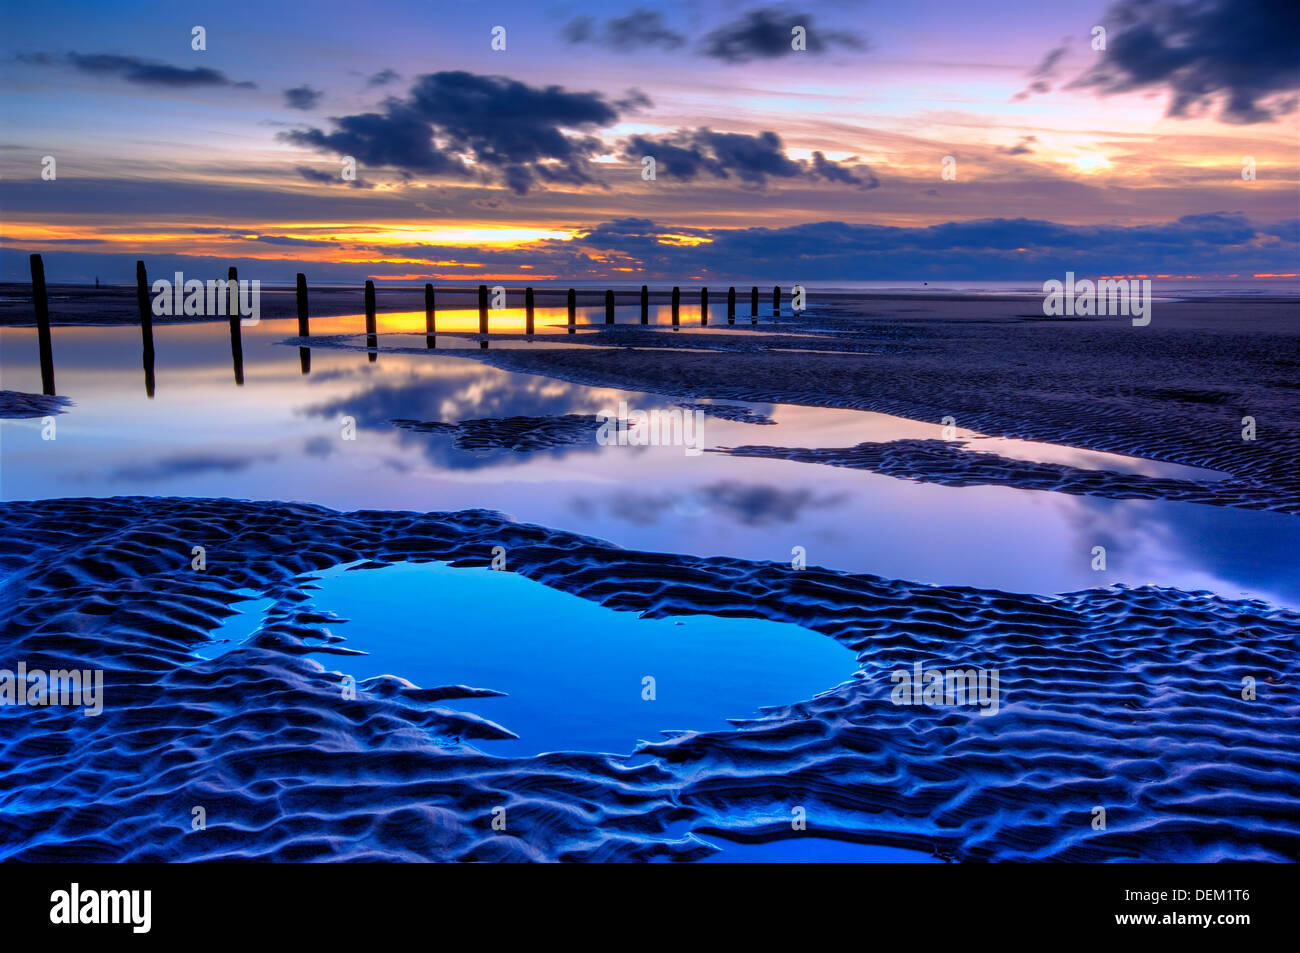 Strand und hölzernen Buhne bei Sonnenuntergang, mit großen Pools von Wasser und Cloud Reflexionen, Blackpool, Lancashire, England, uk, Europa Stockfoto